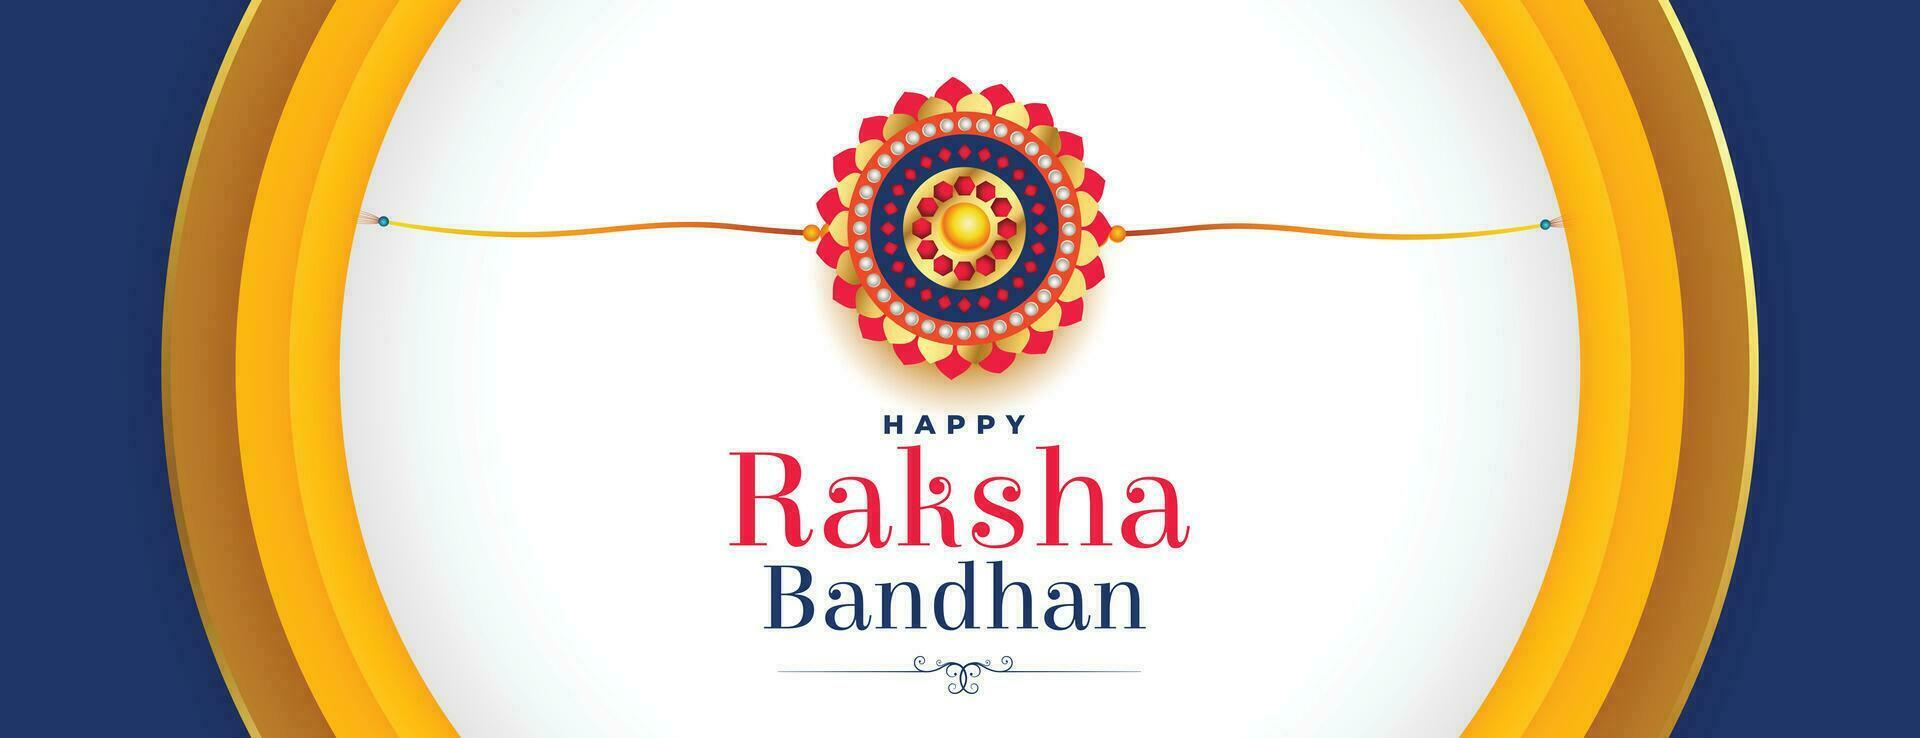 élégant raksha bandhan bannière avec réaliste rakhi vecteur